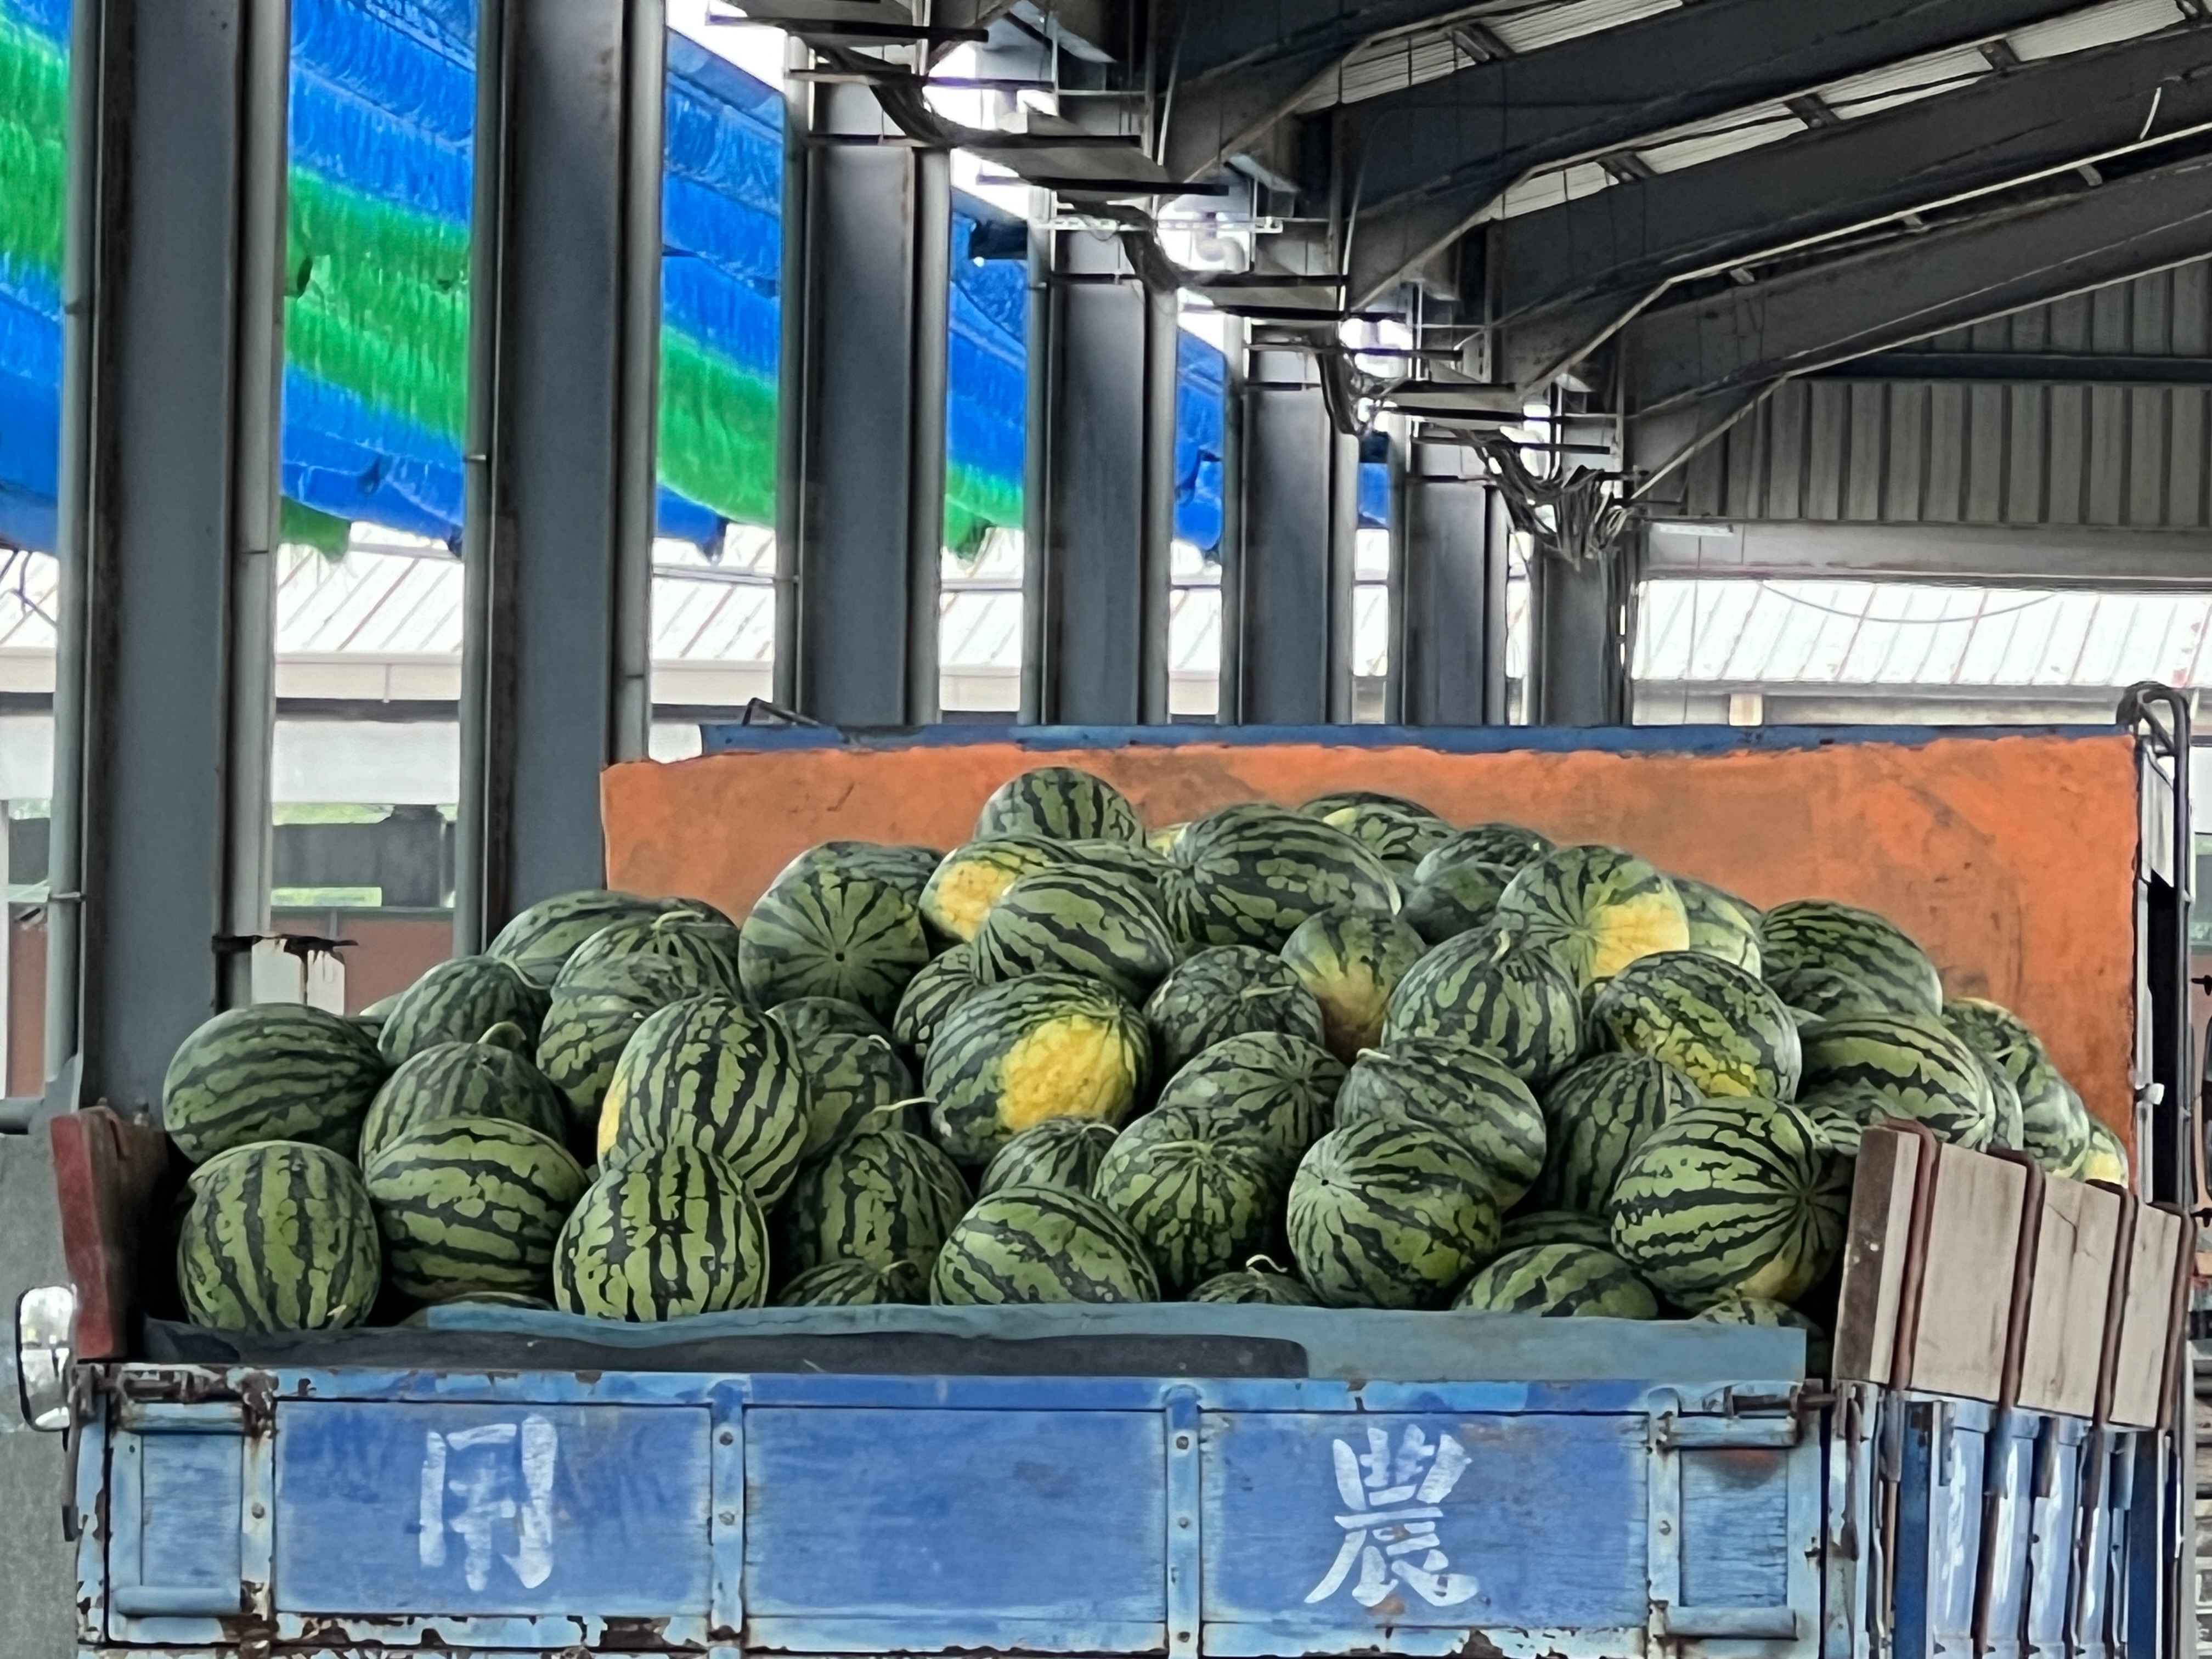 云林县二仑乡正值西瓜盛产季，农民采收后穿梭在街上或自强果菜市场贩售。记者陈苡葳／摄影